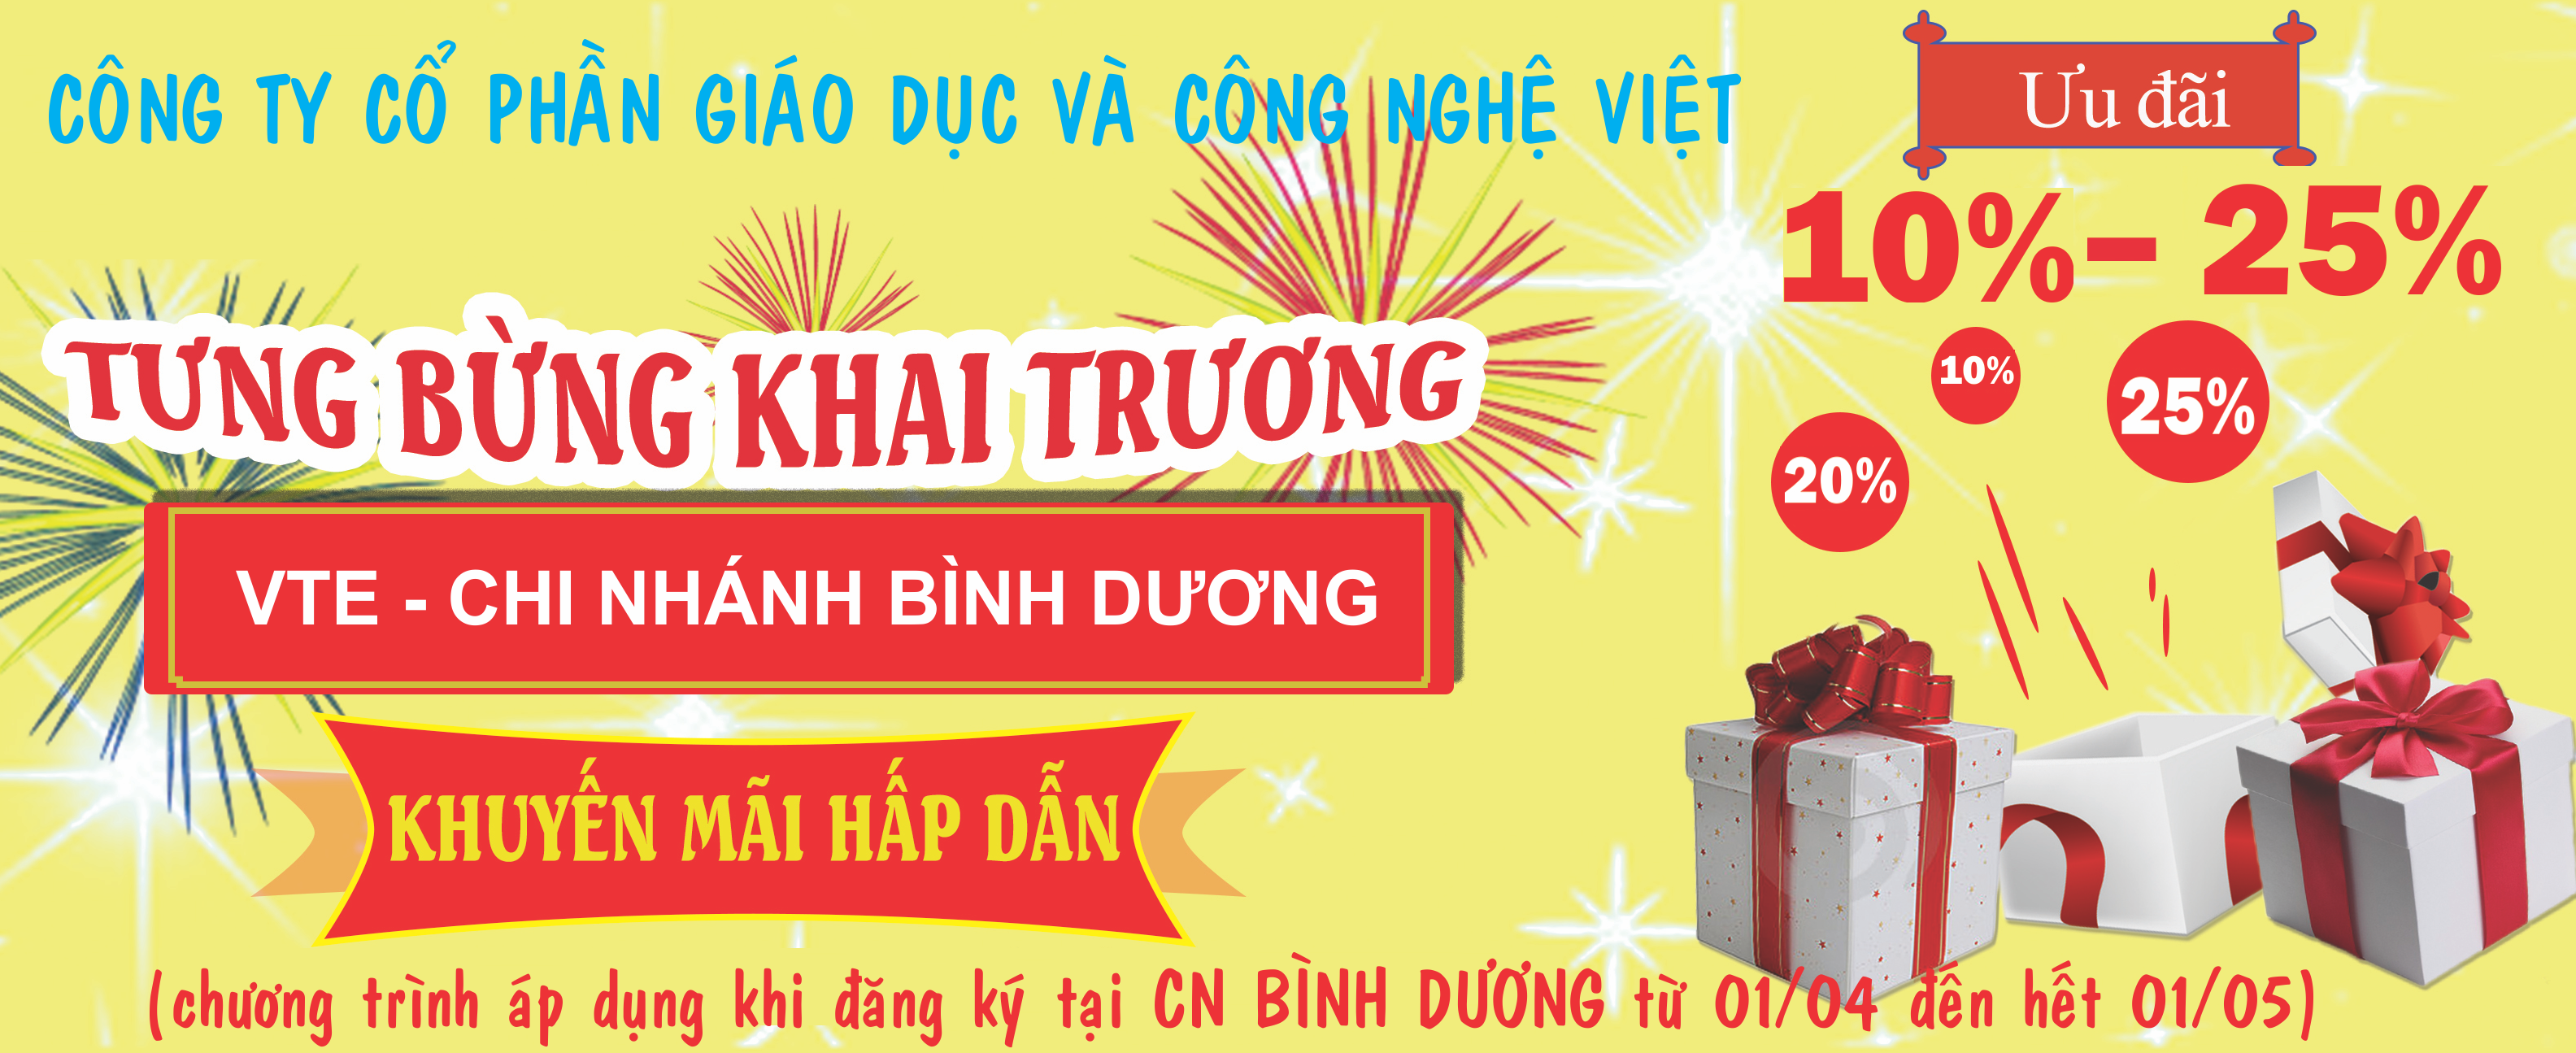 banner-VTE-Binhduong